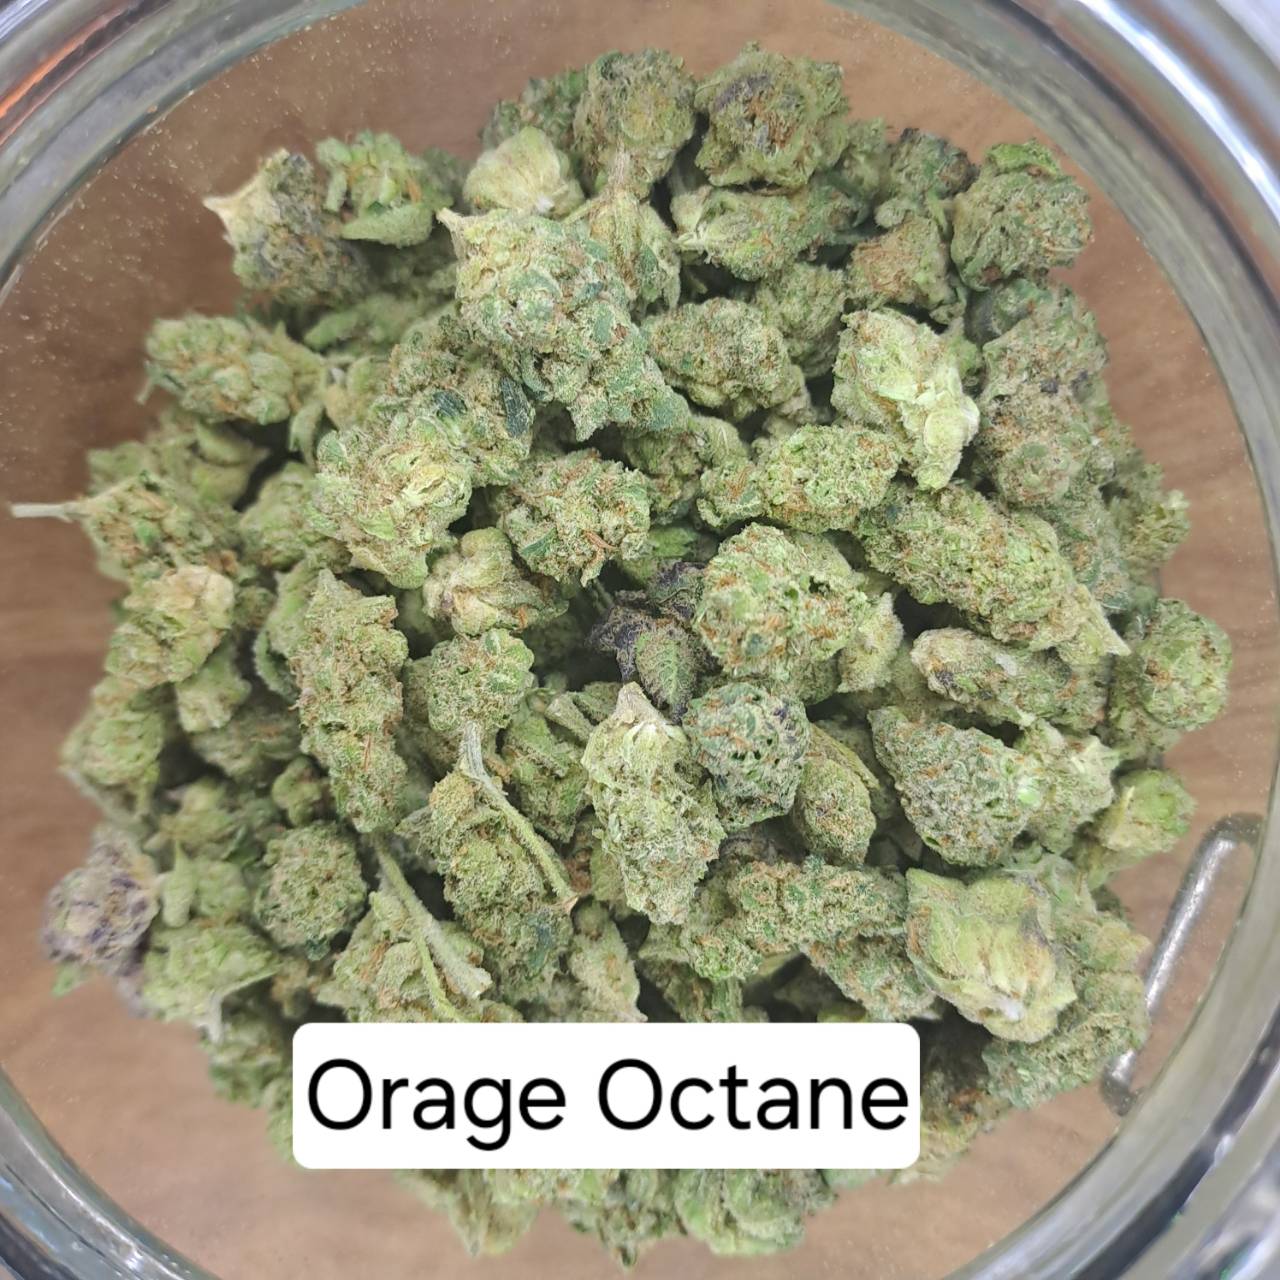 Product Image for Orange Octane